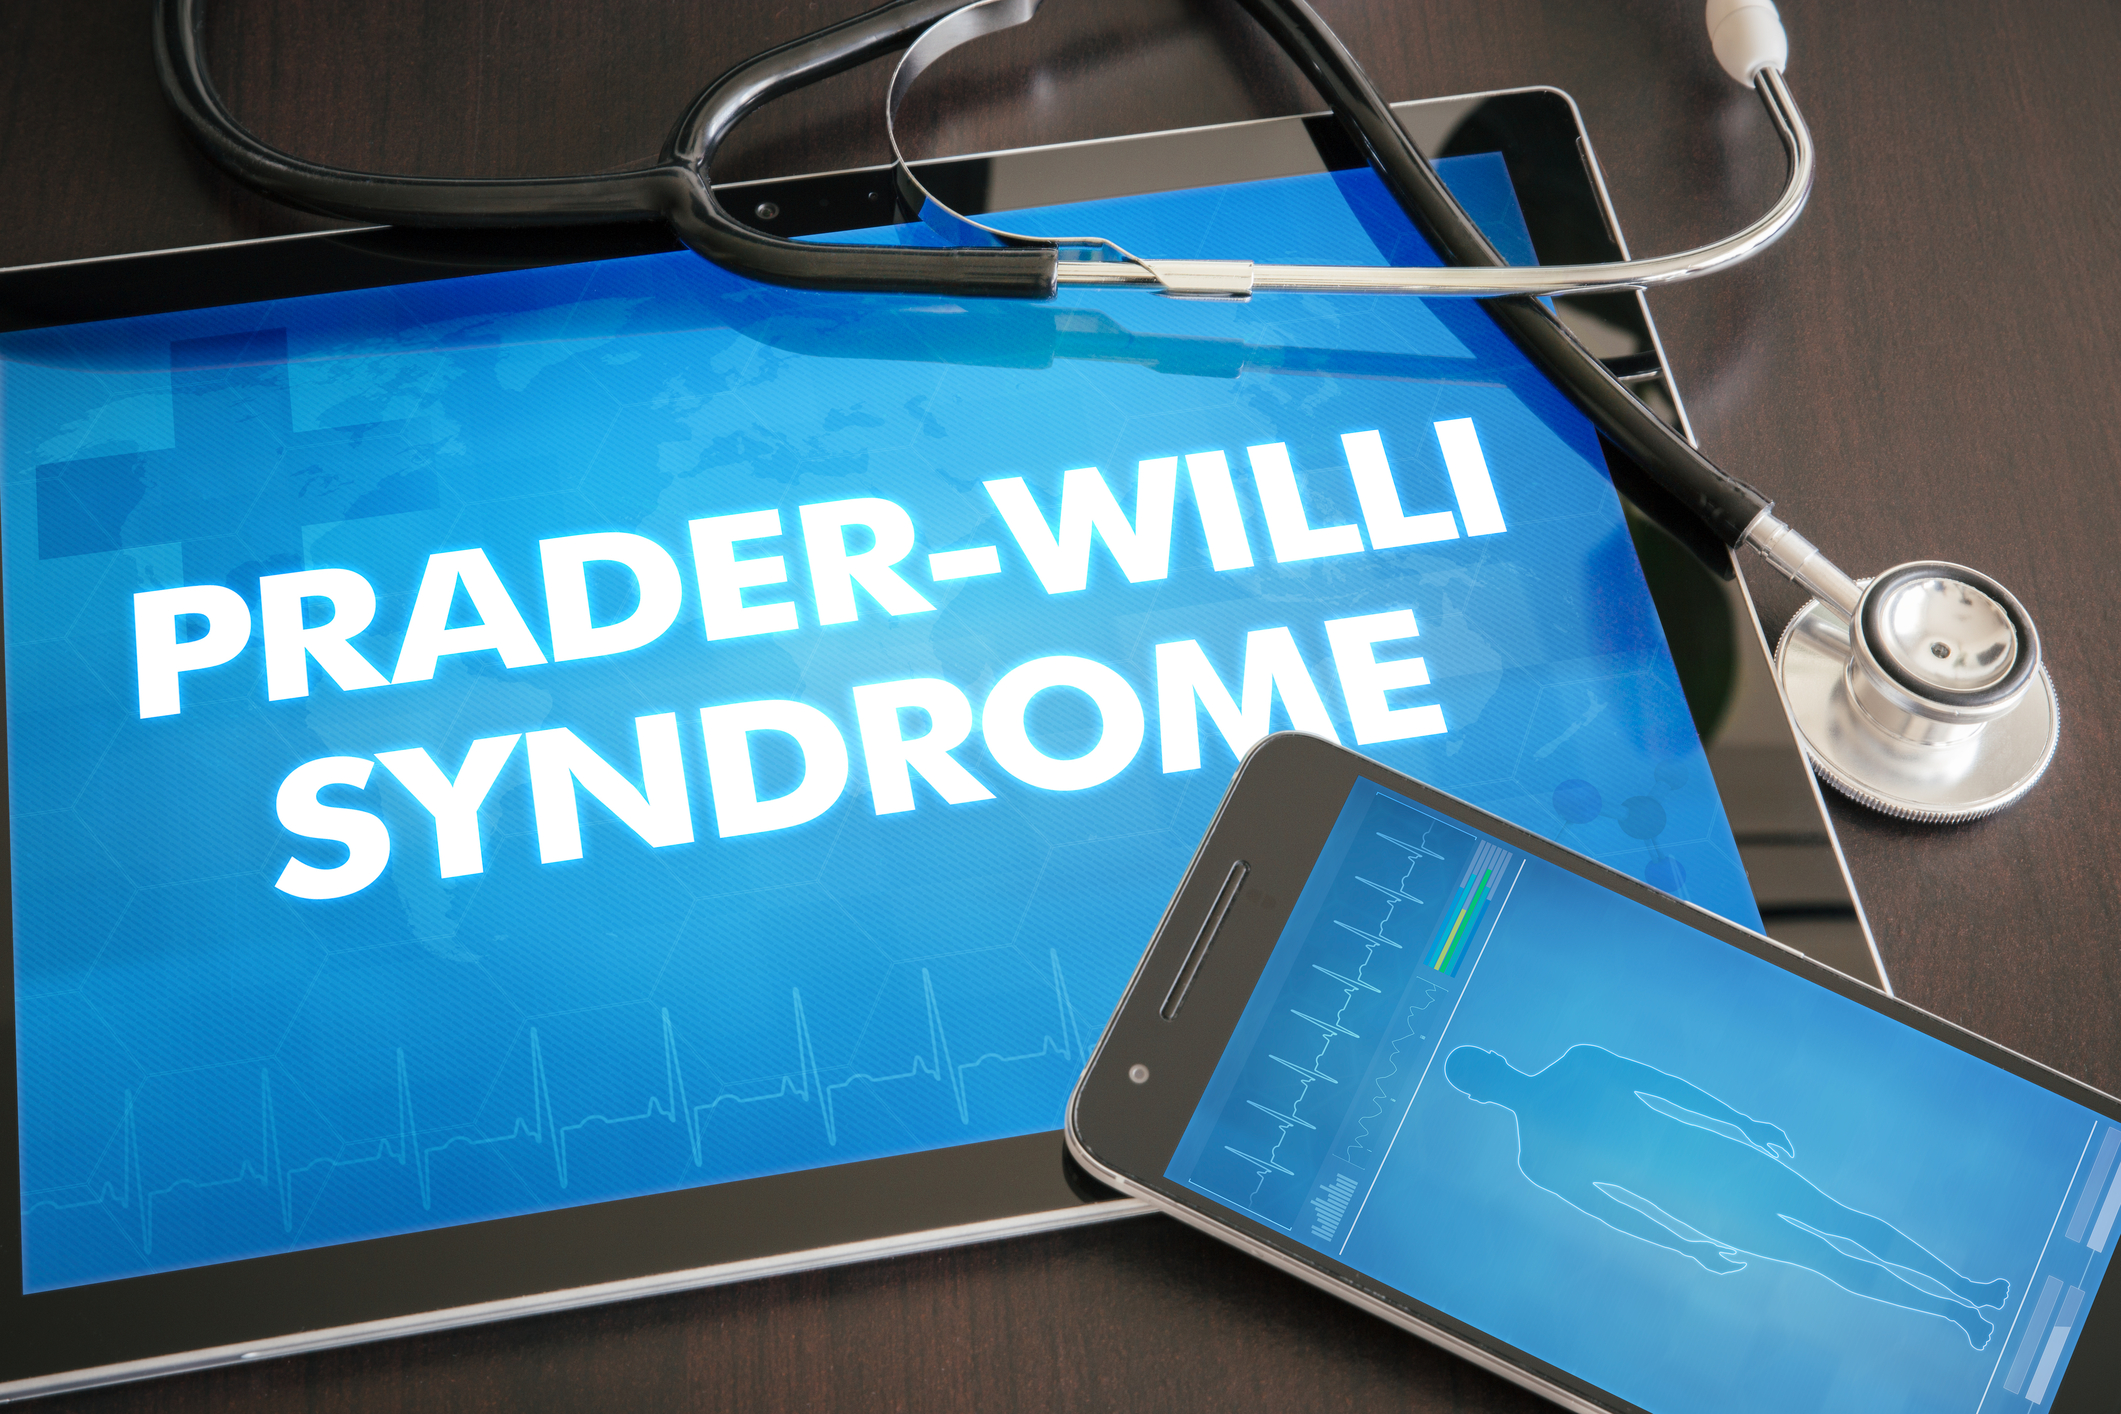 Prader-Willi Syndrome Awareness